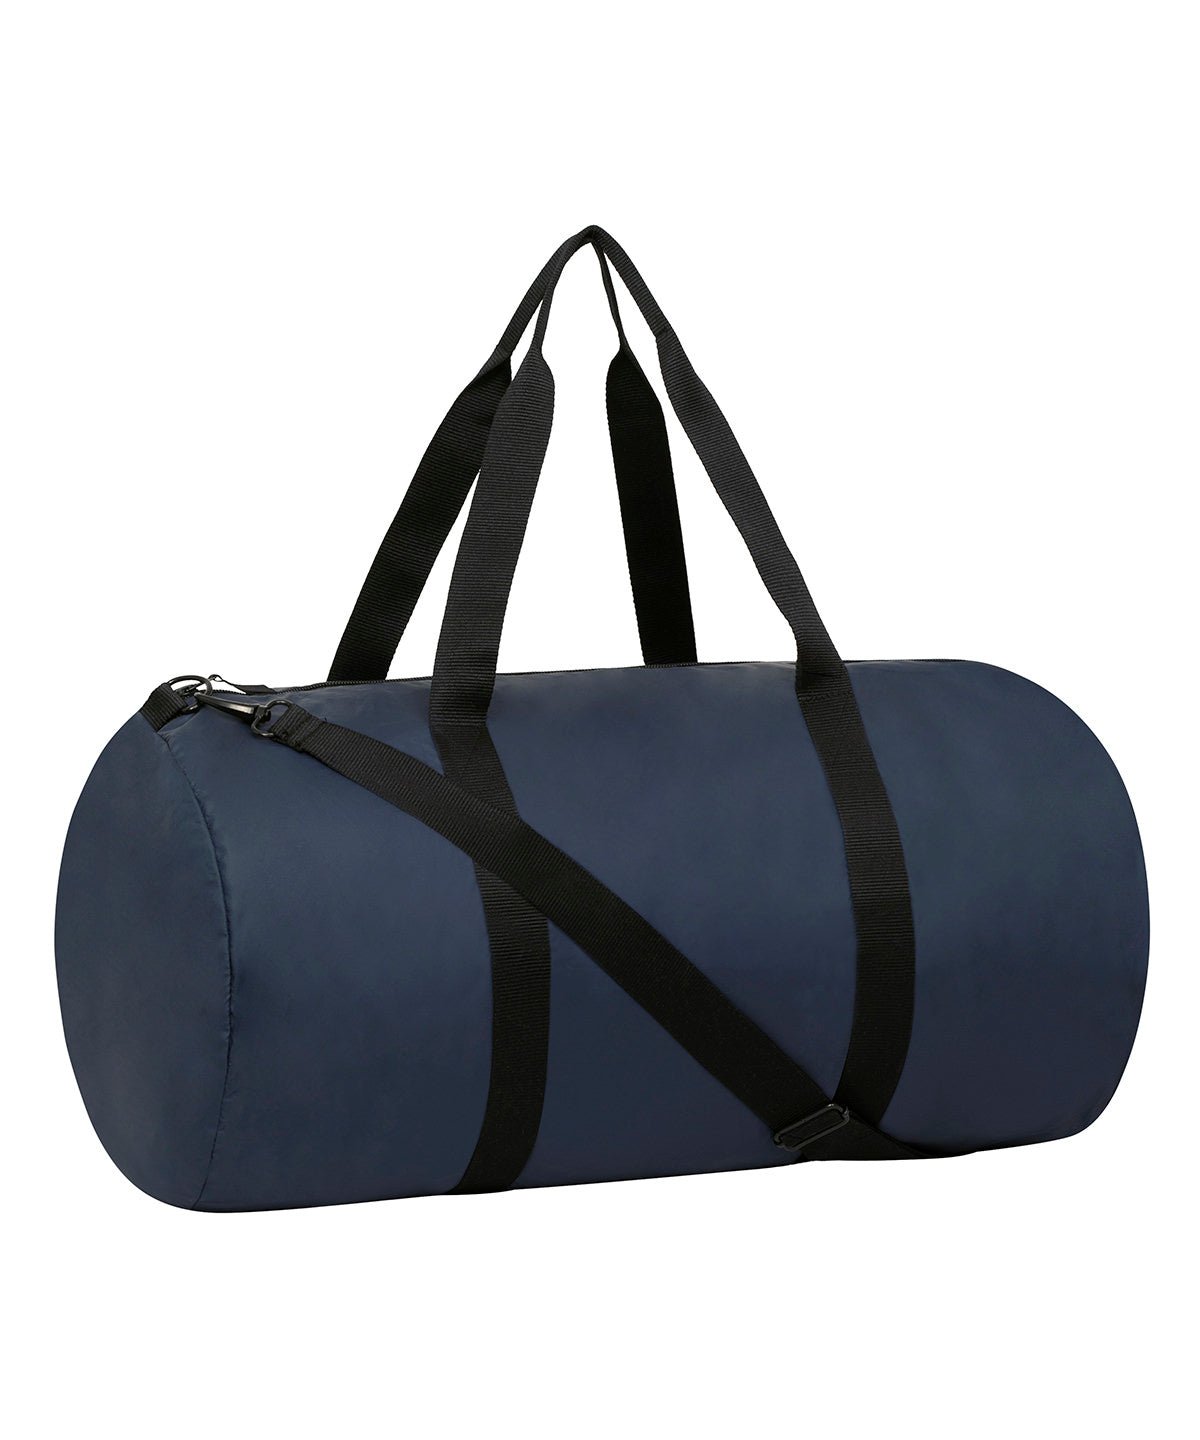 Töskur - Lightweight Duffle Bag (STAU770)